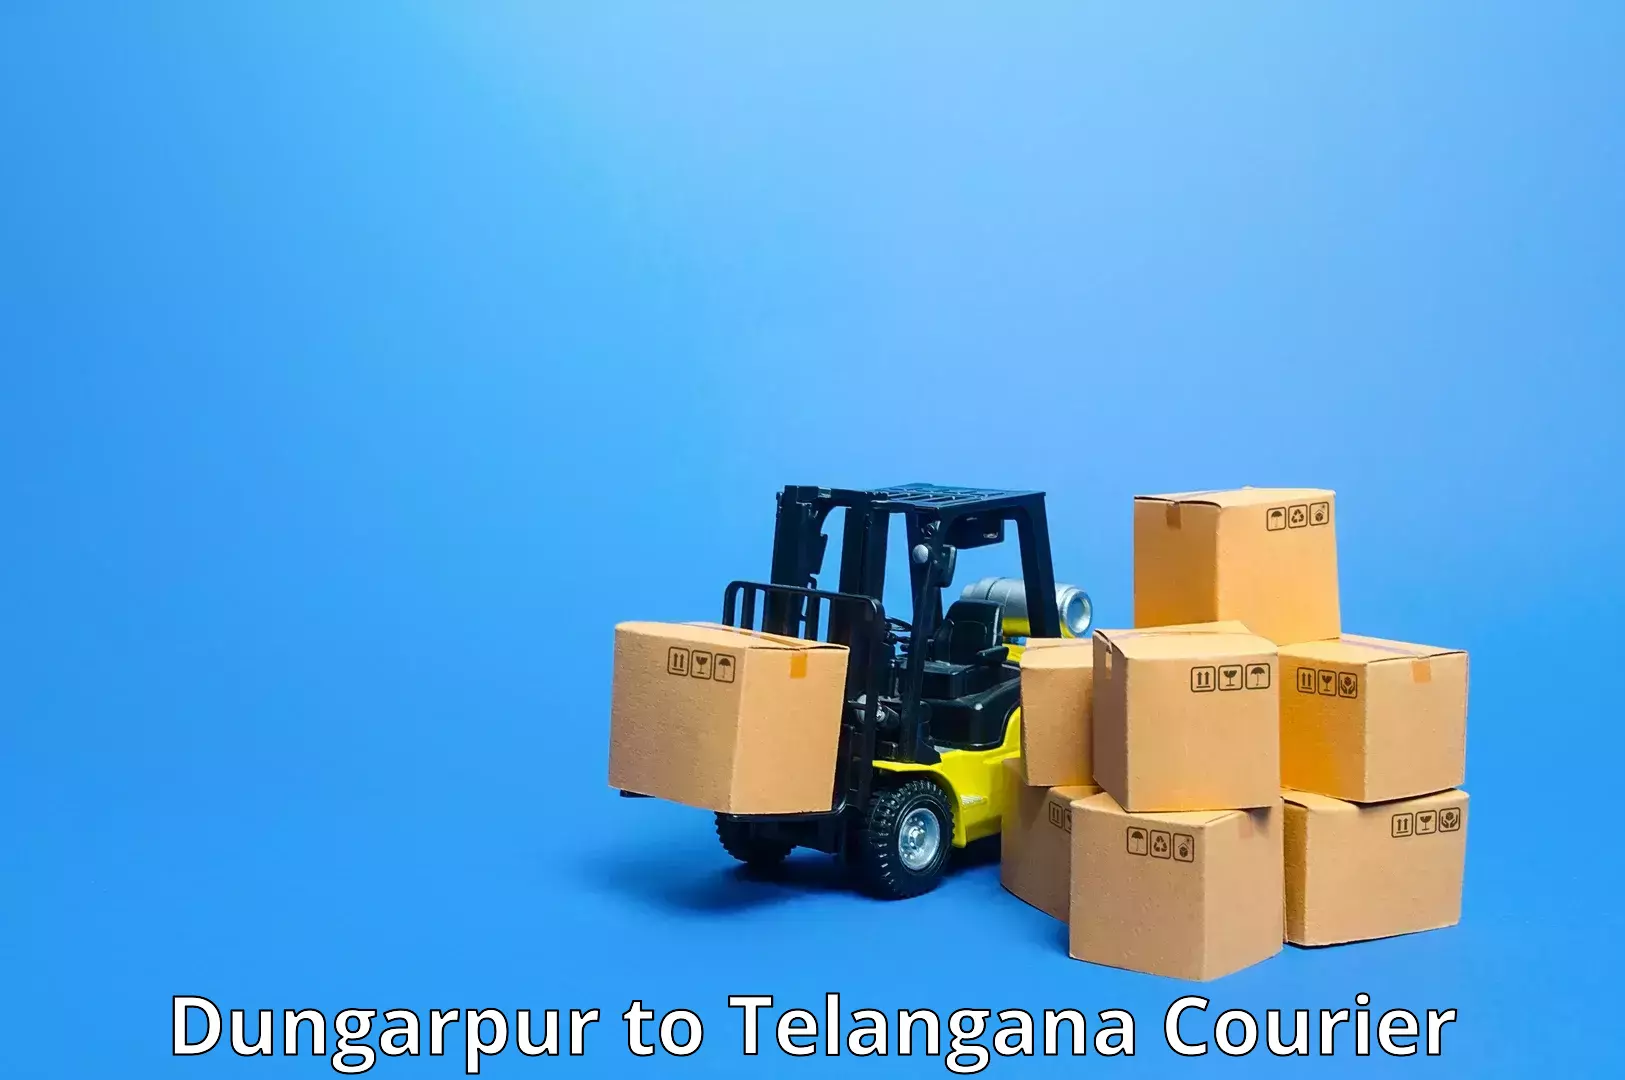 High-capacity parcel service Dungarpur to Marikal